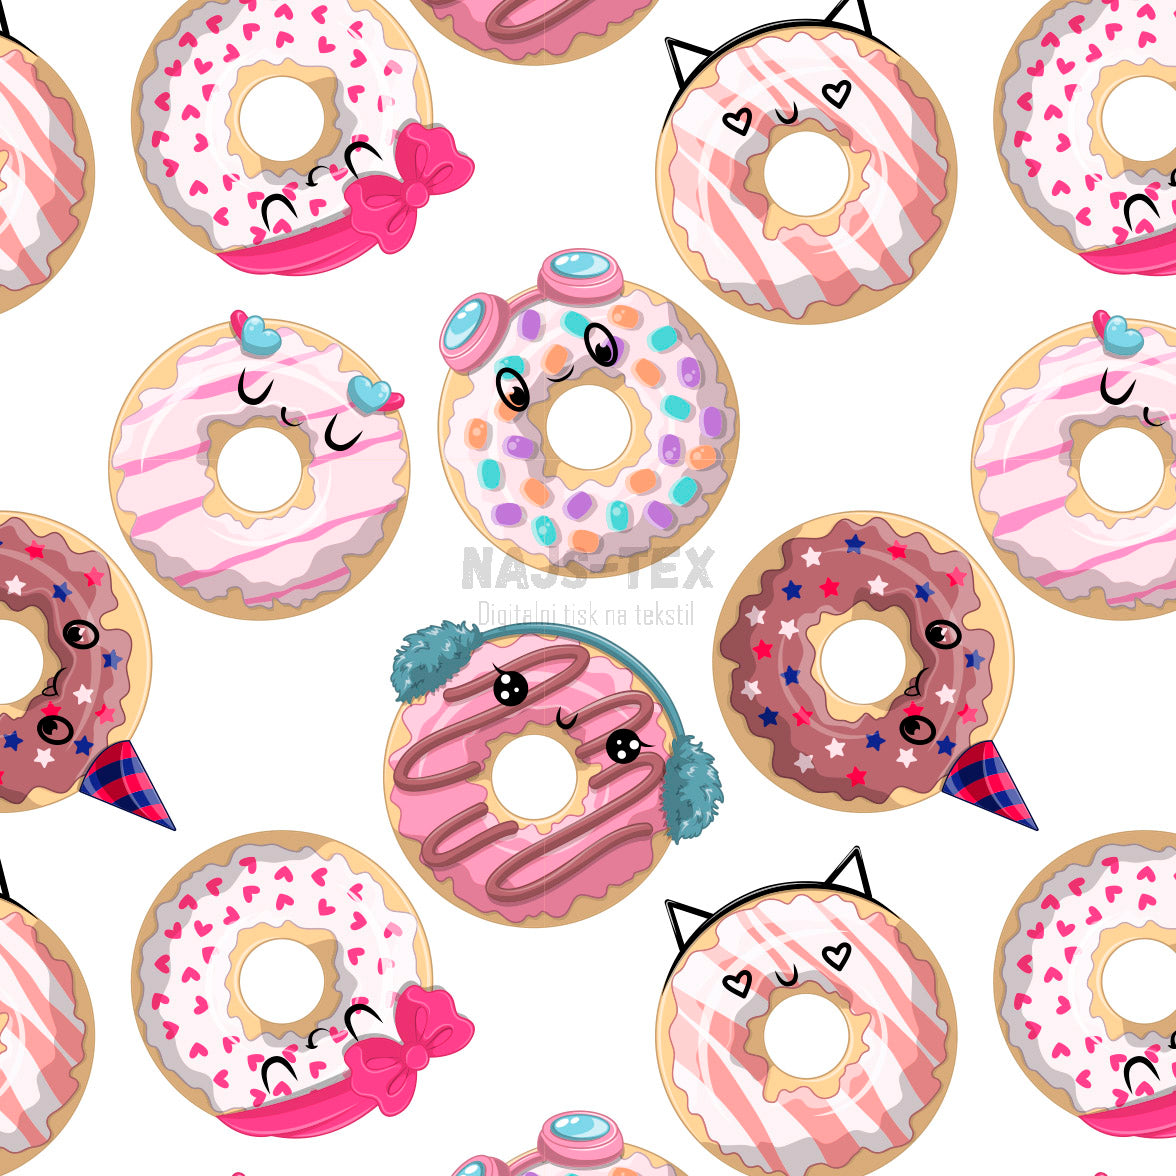 Tisk vzorca po naročilu - Donuts